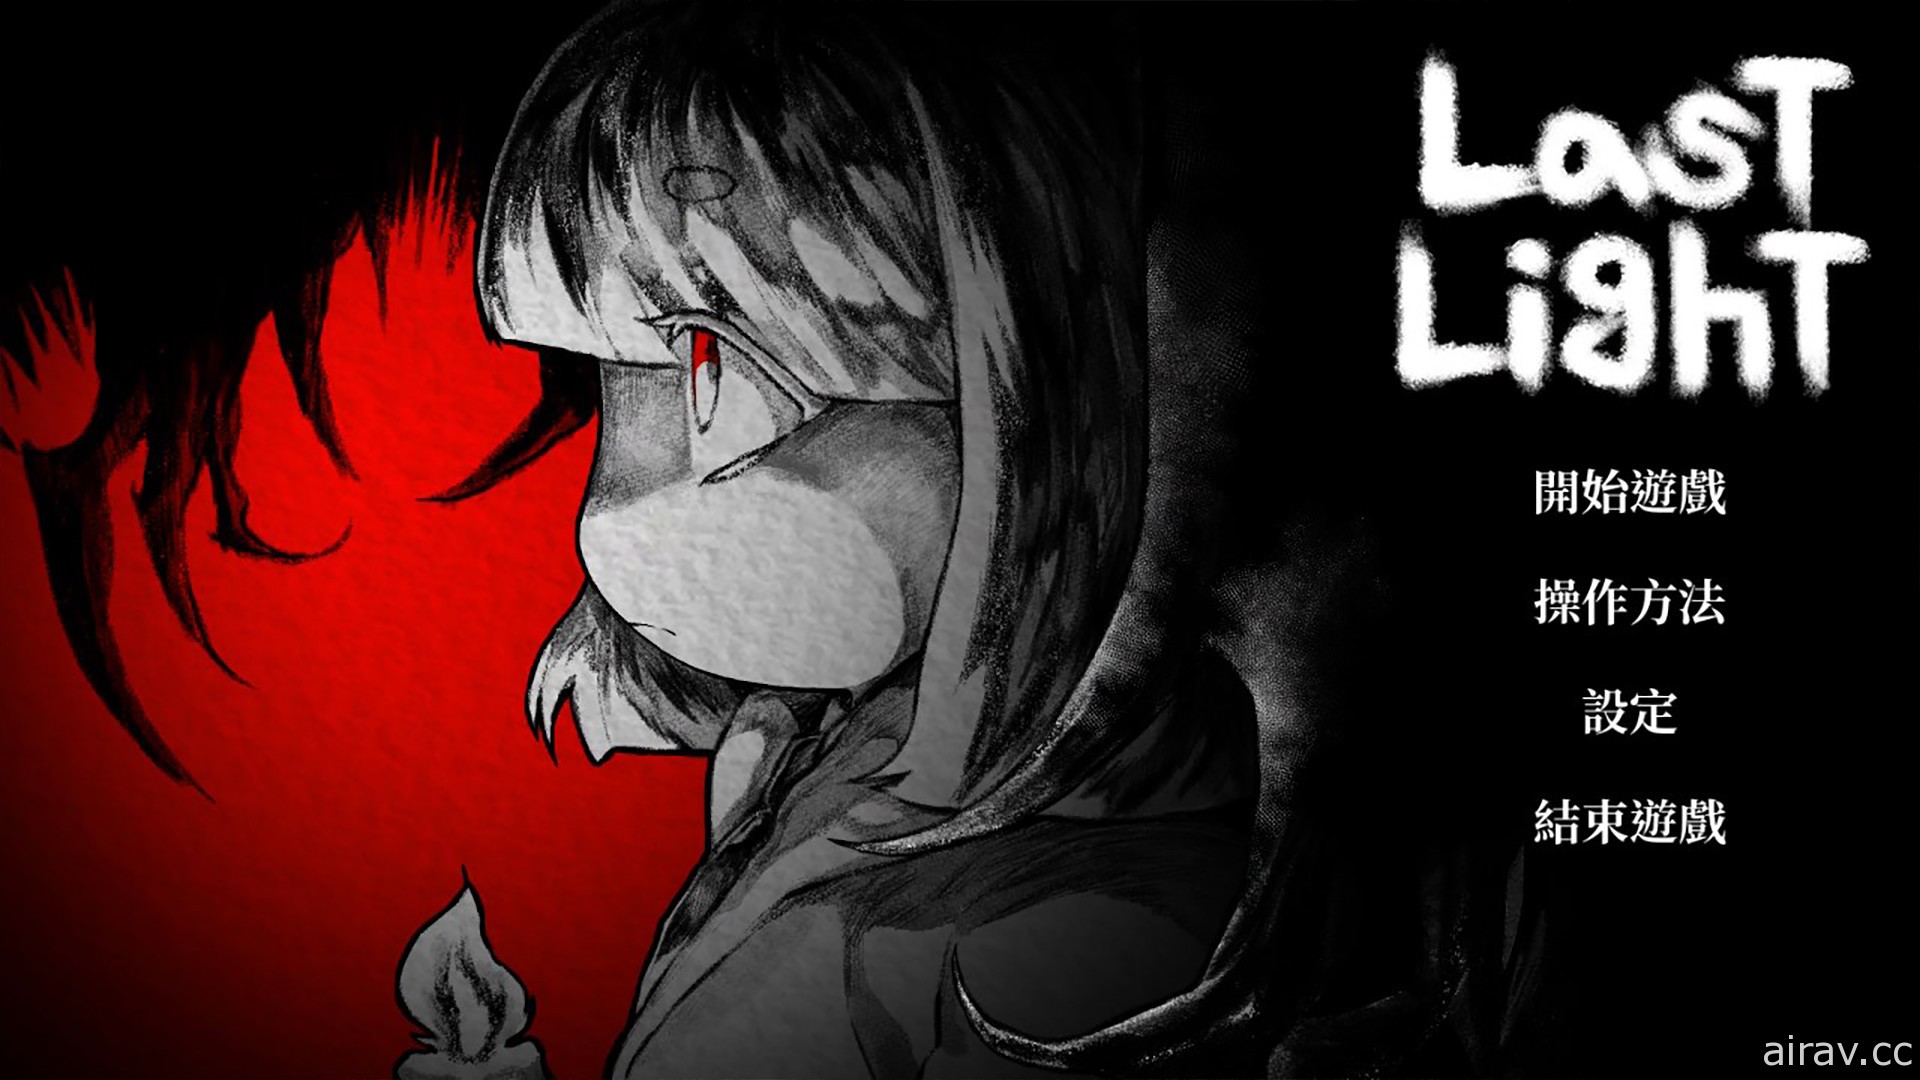 恐怖冒险游戏《最后的光线》8 月 26 日上市 在废弃医院逃离鬼魂的魔爪